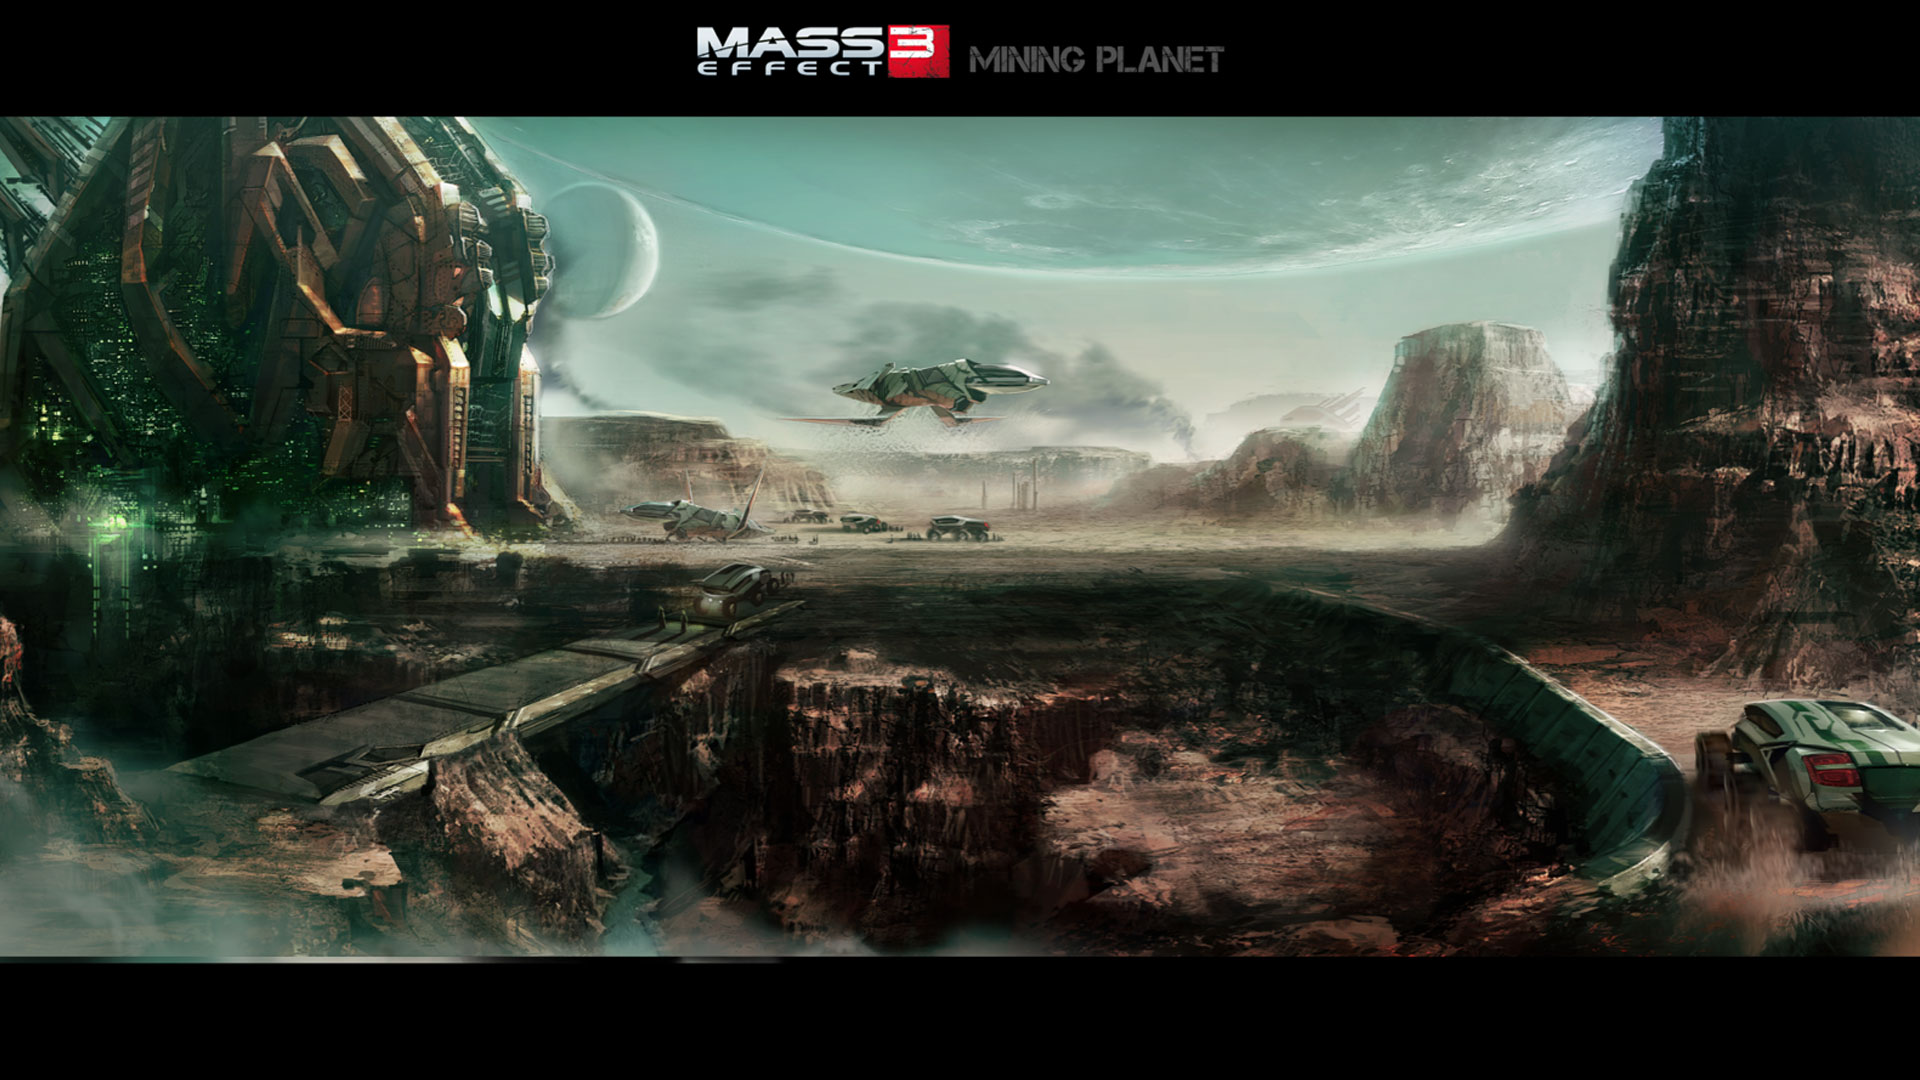 Mass Effect Wallpaper High Resolution Image Gallery